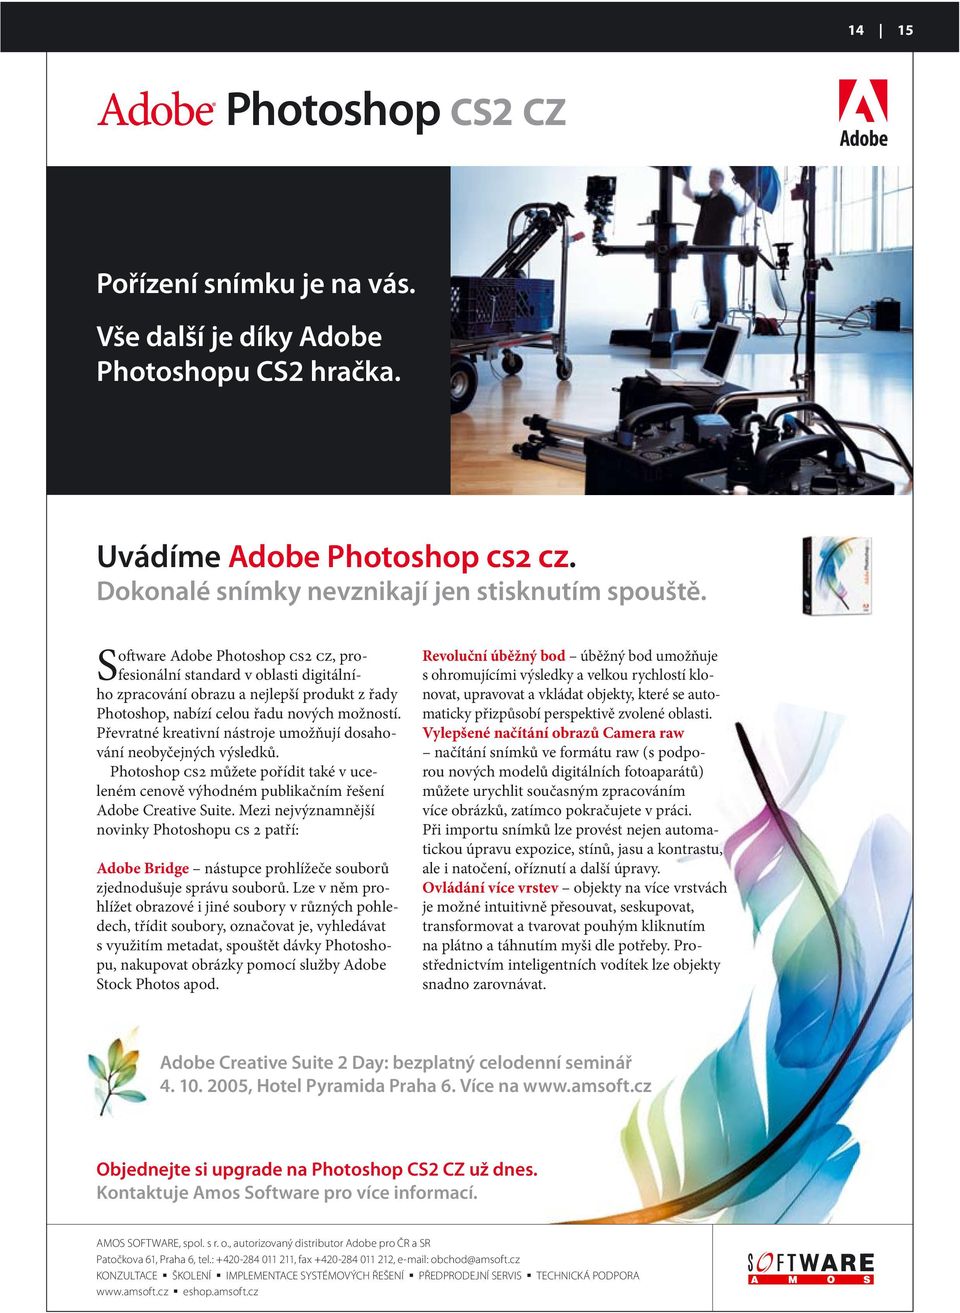 Převratné kreativní nástroje umožňují dosahování neobyčejných výsledků. Photoshop CS2 můžete pořídit také v uceleném cenově výhodném publikačním řešení Adobe Creative Suite.